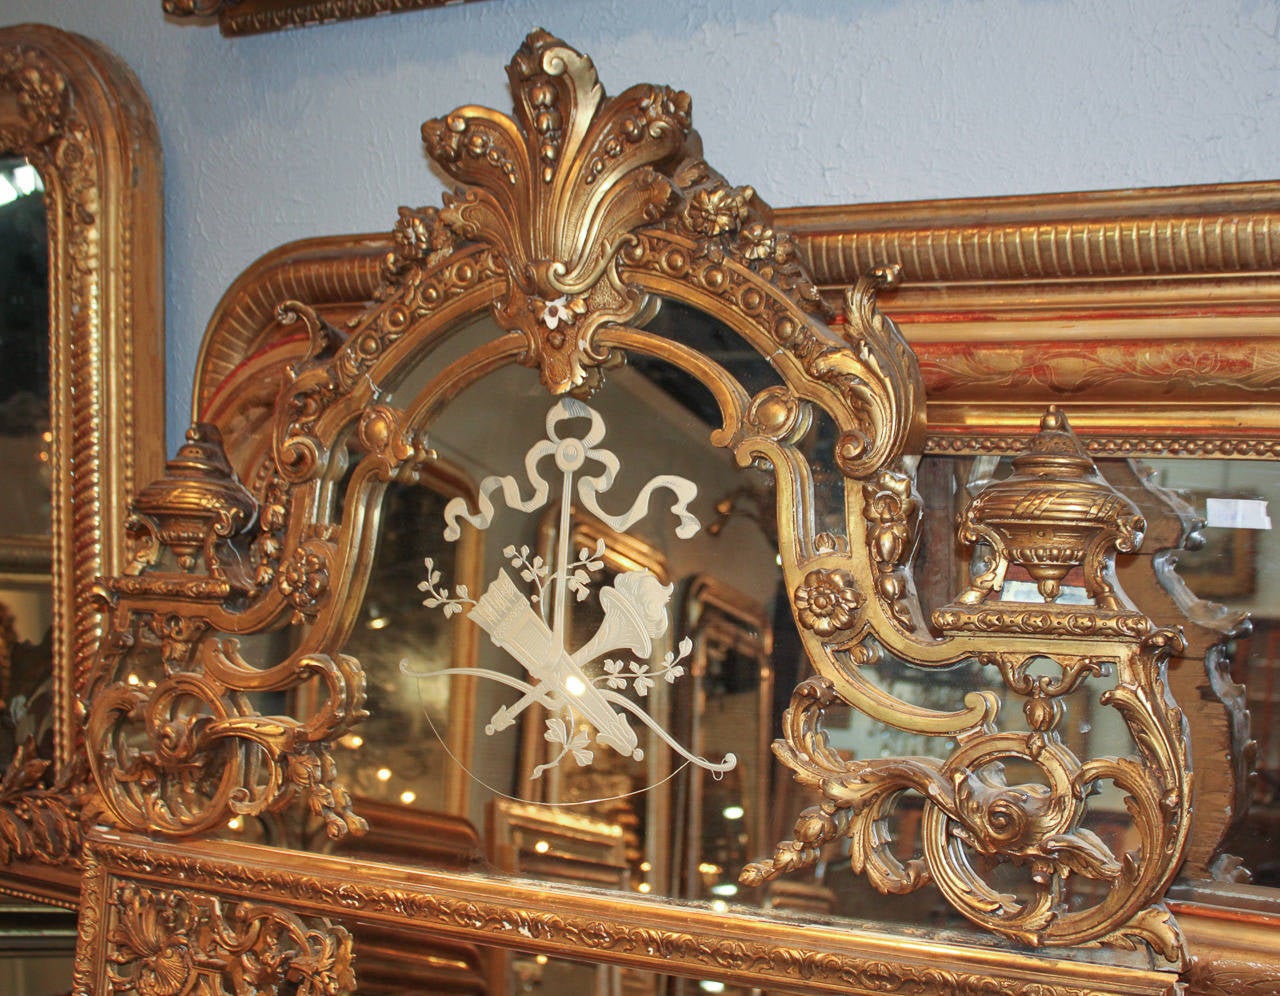 Superbe miroir français Napoléon III en bois doré avec un cartouche miroir élaboré. Image d'une torche, d'un carquois et d'un arc en verre réfléchissant, grands épis de faîtage et verre biseauté. Une pièce sensationnelle merveilleuse pour de